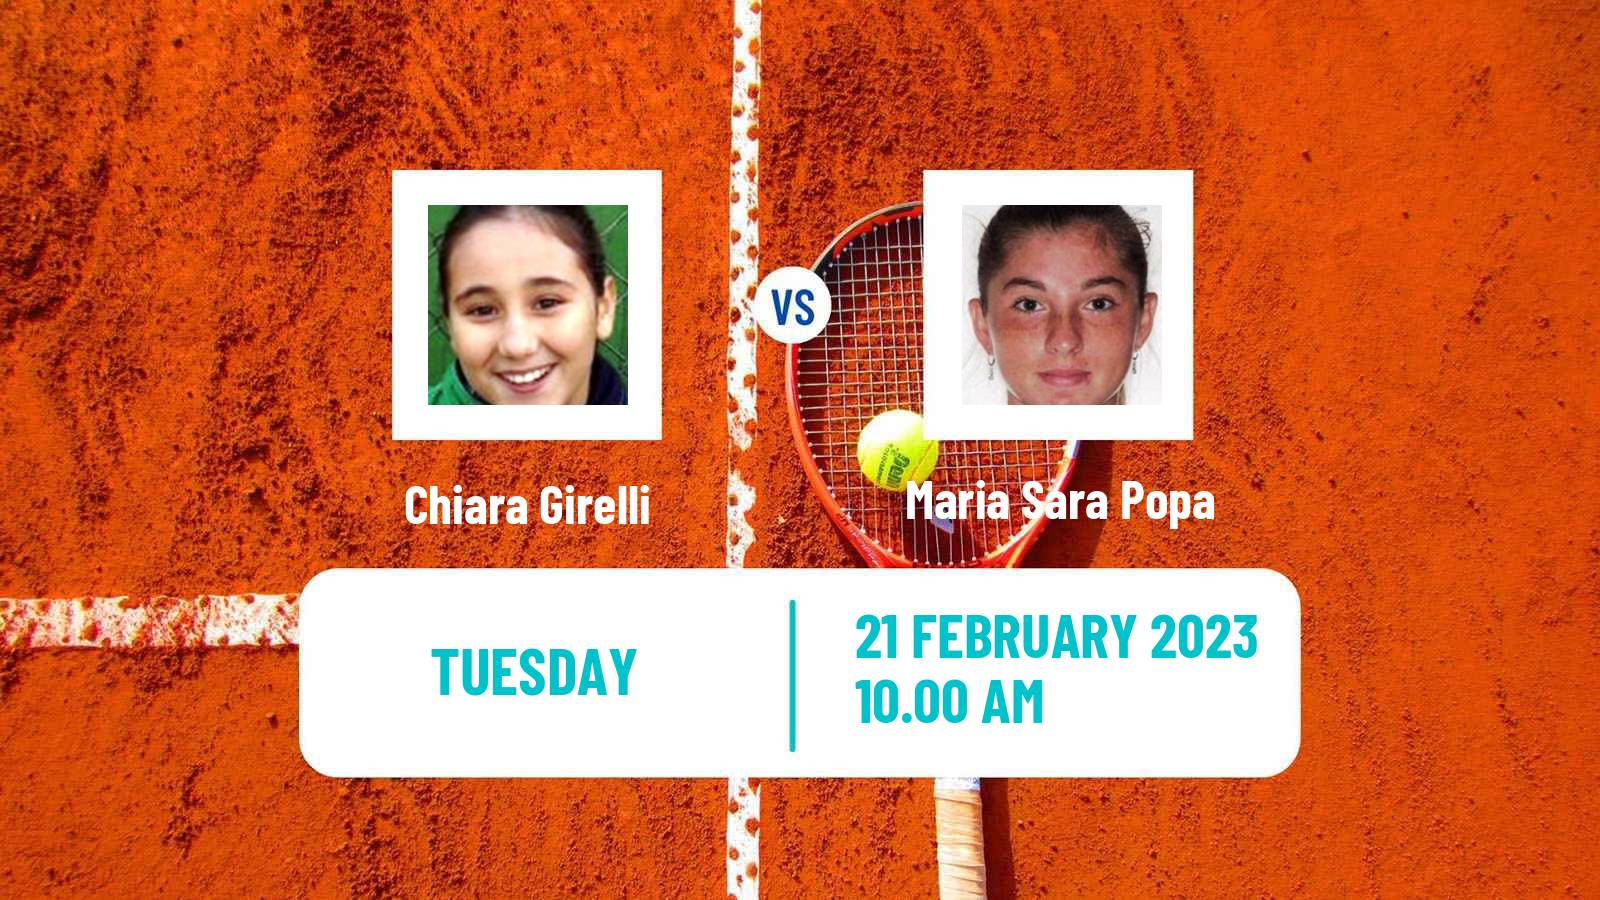 Tennis ITF Tournaments Chiara Girelli - Maria Sara Popa